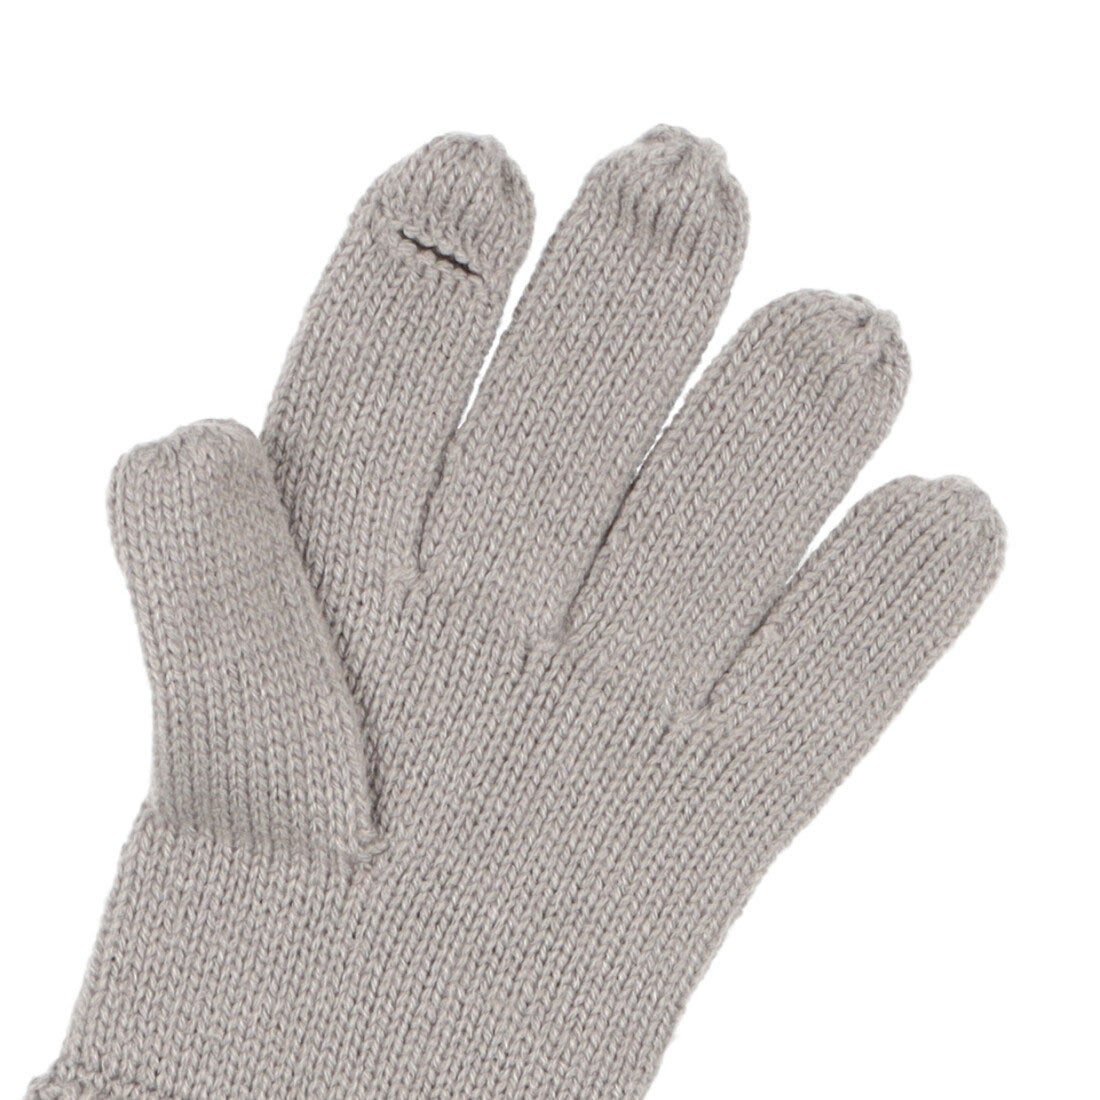 【新品未使用】Calvin Klein マフラー&手袋